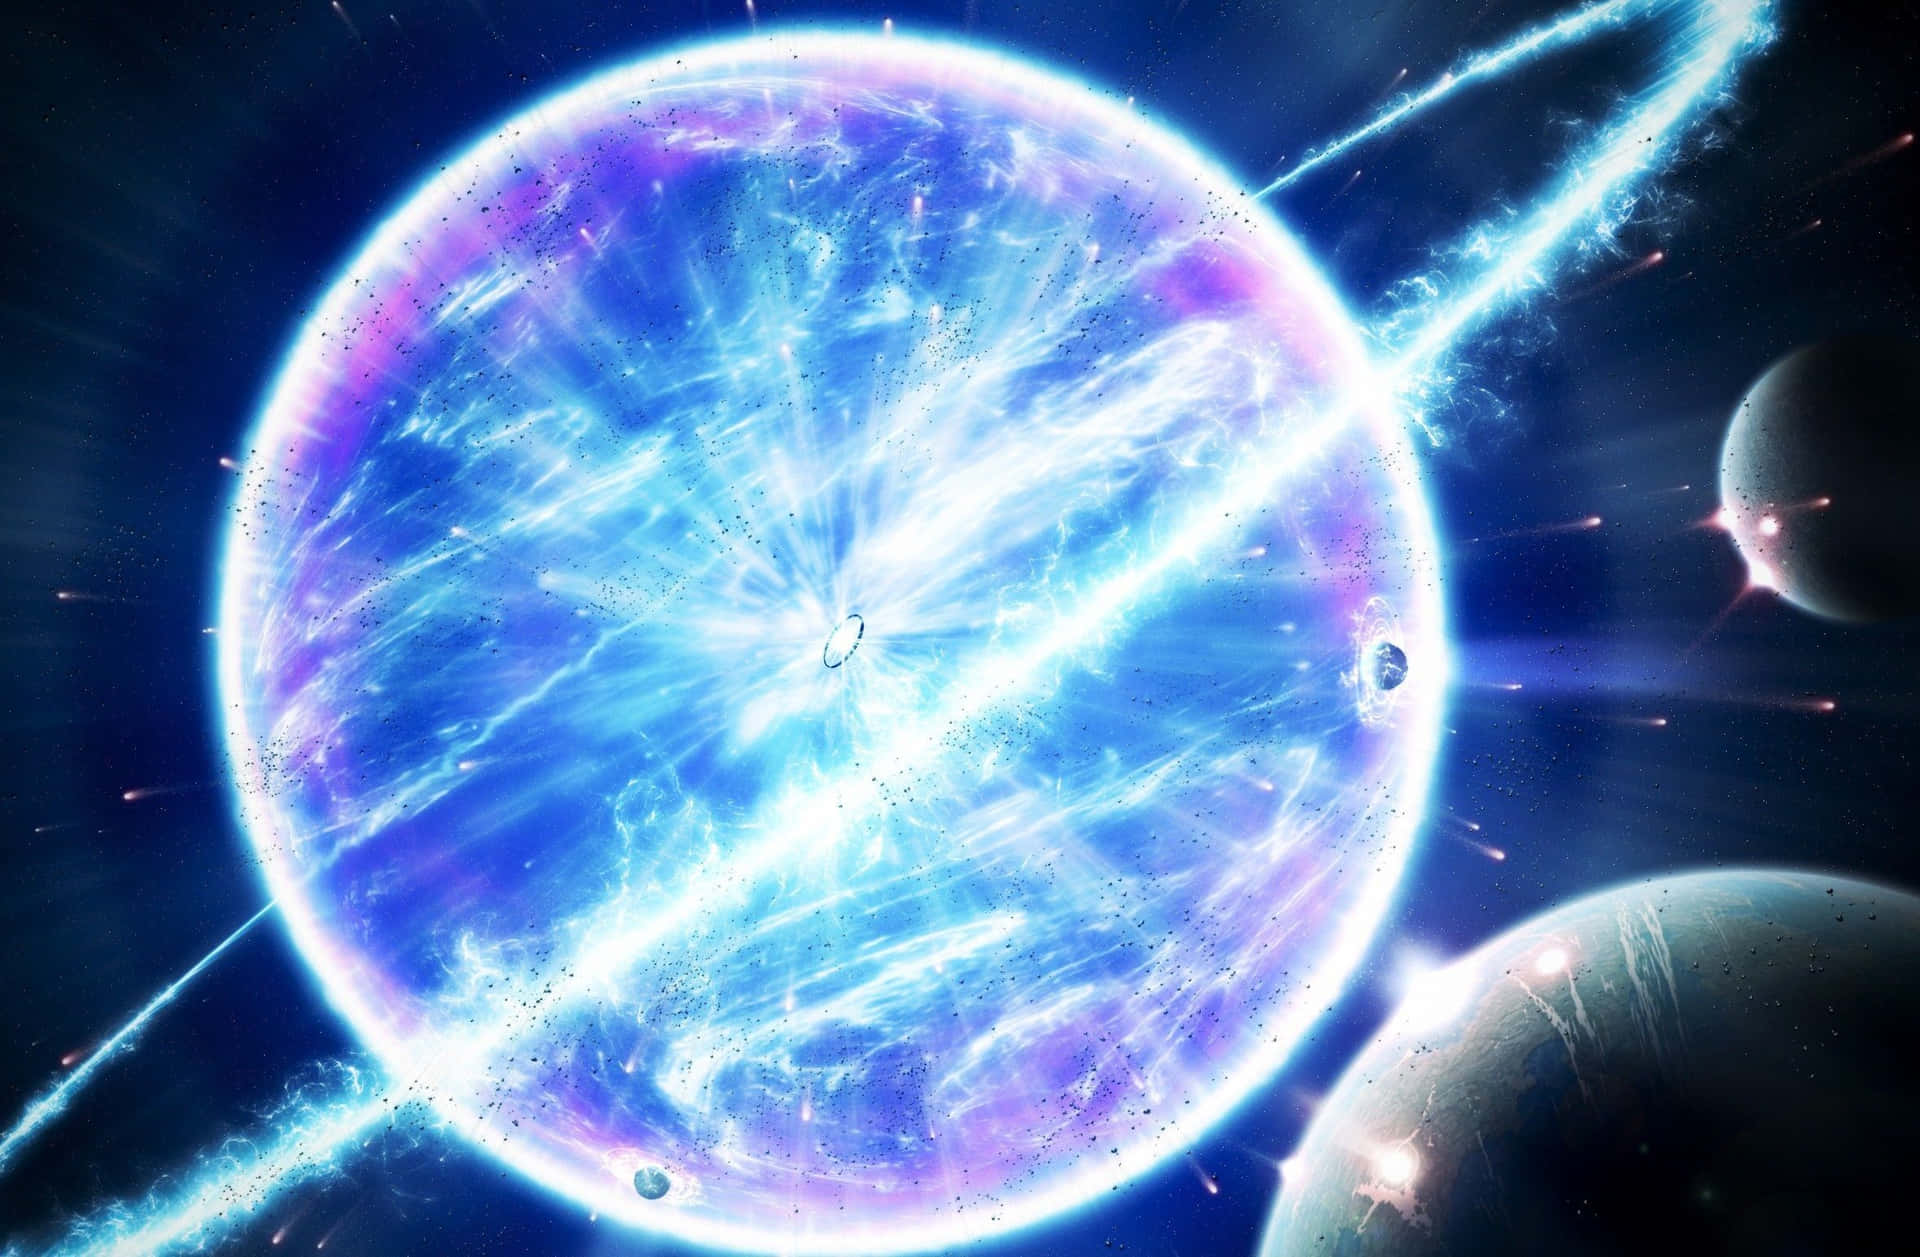 Enaståendebild Av En Supernova-explosion I Rymden.